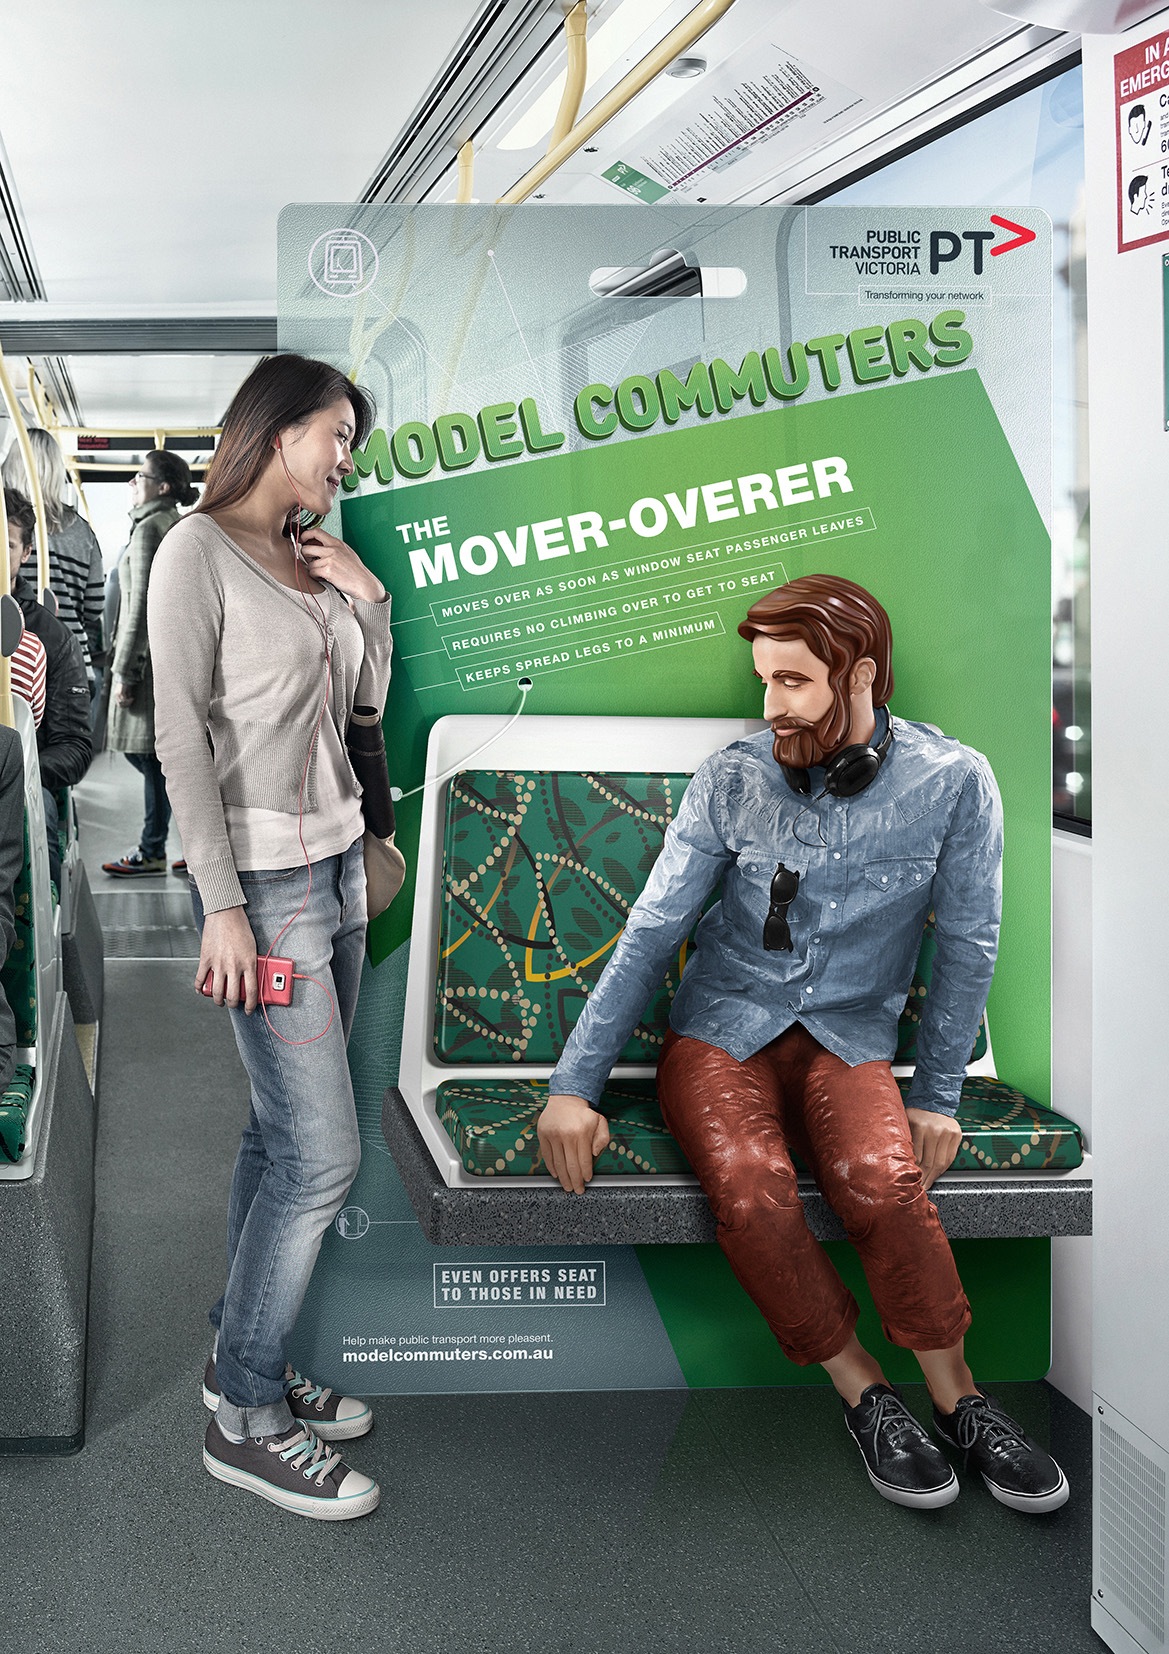 维多利亚公共交通平面广告设计